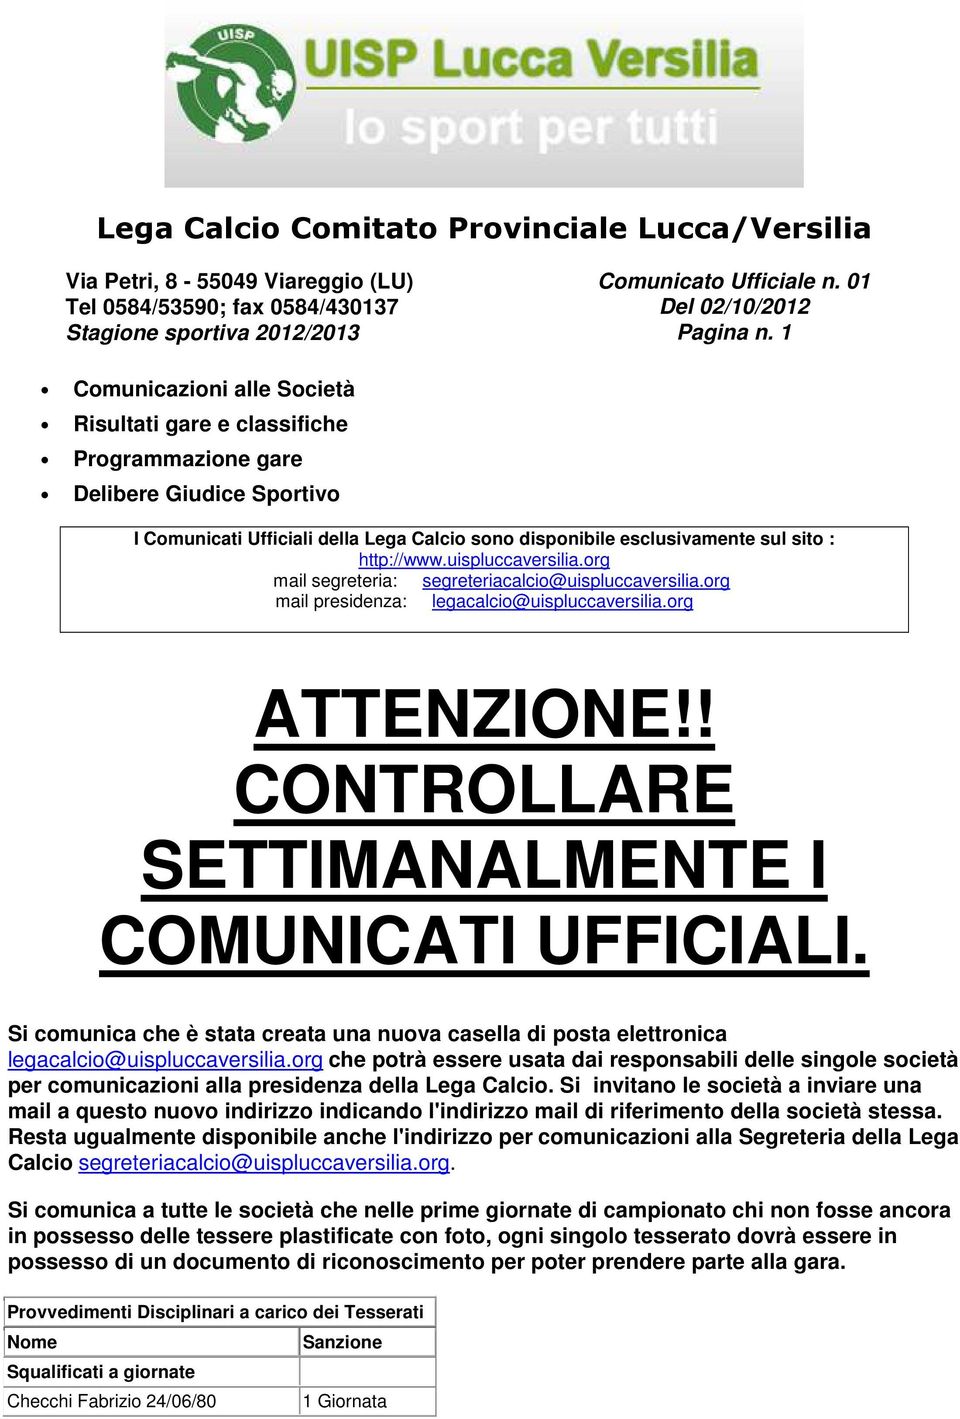 uispluccaversilia.org mail segreteria: segreteriacalcio@uispluccaversilia.org mail presidenza: legacalcio@uispluccaversilia.org ATTENZIONE!! CONTROLLARE SETTIMANALMENTE I COMUNICATI UFFICIALI.